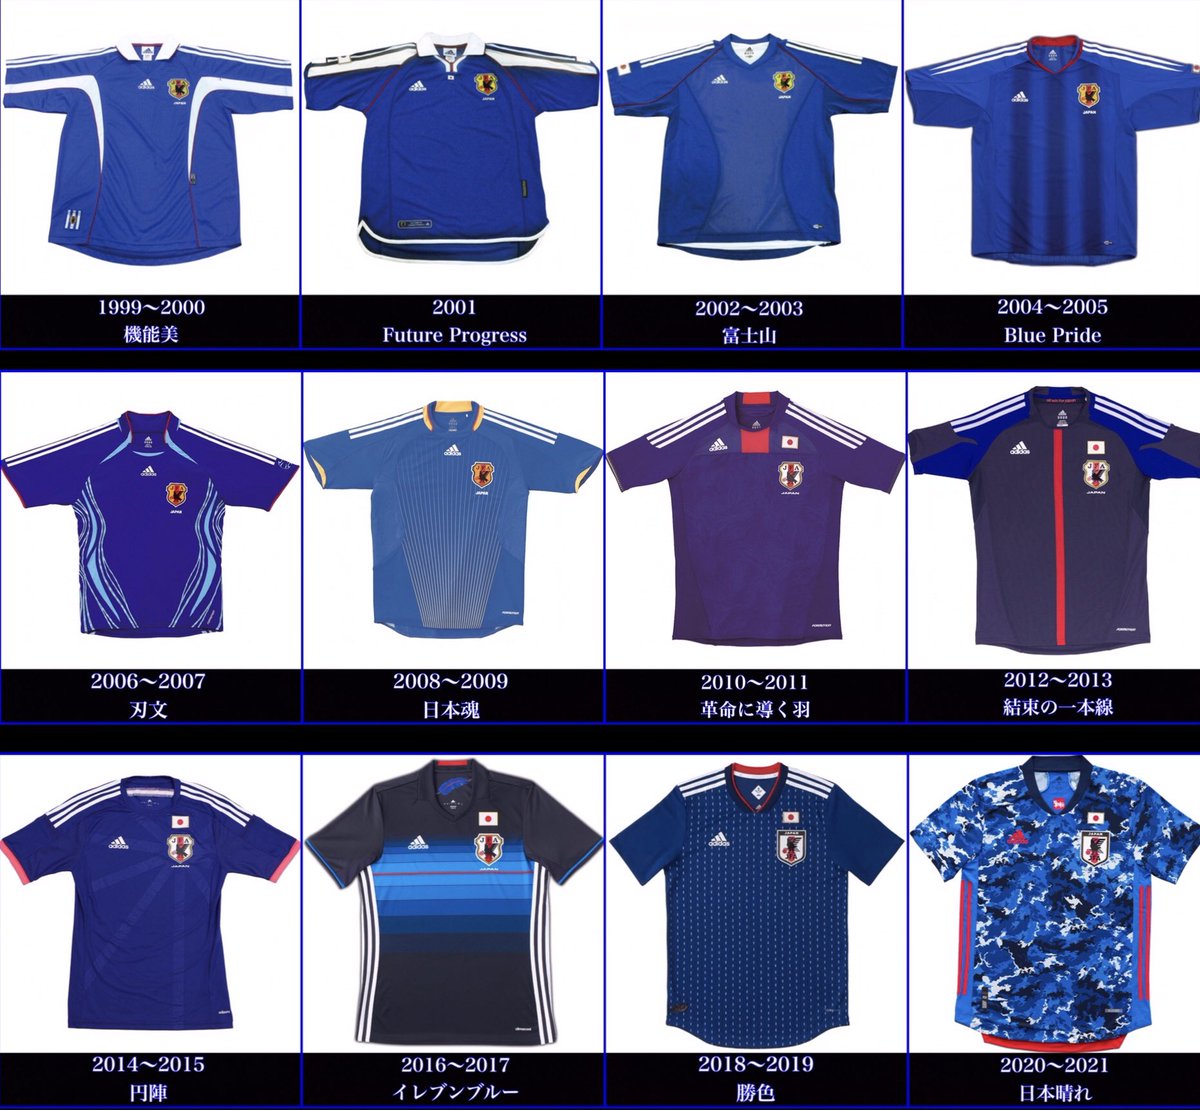 蓮 ここ年間のサッカー日本代表のユニフォームを一覧にしてみた 個人的には04 07の２つが一番好き 来季の ユニフォームはどうするんだろう 今季の 日本晴れ はほとんど着ていないし あれで東京五輪を戦うことになっているし セールス面も好調